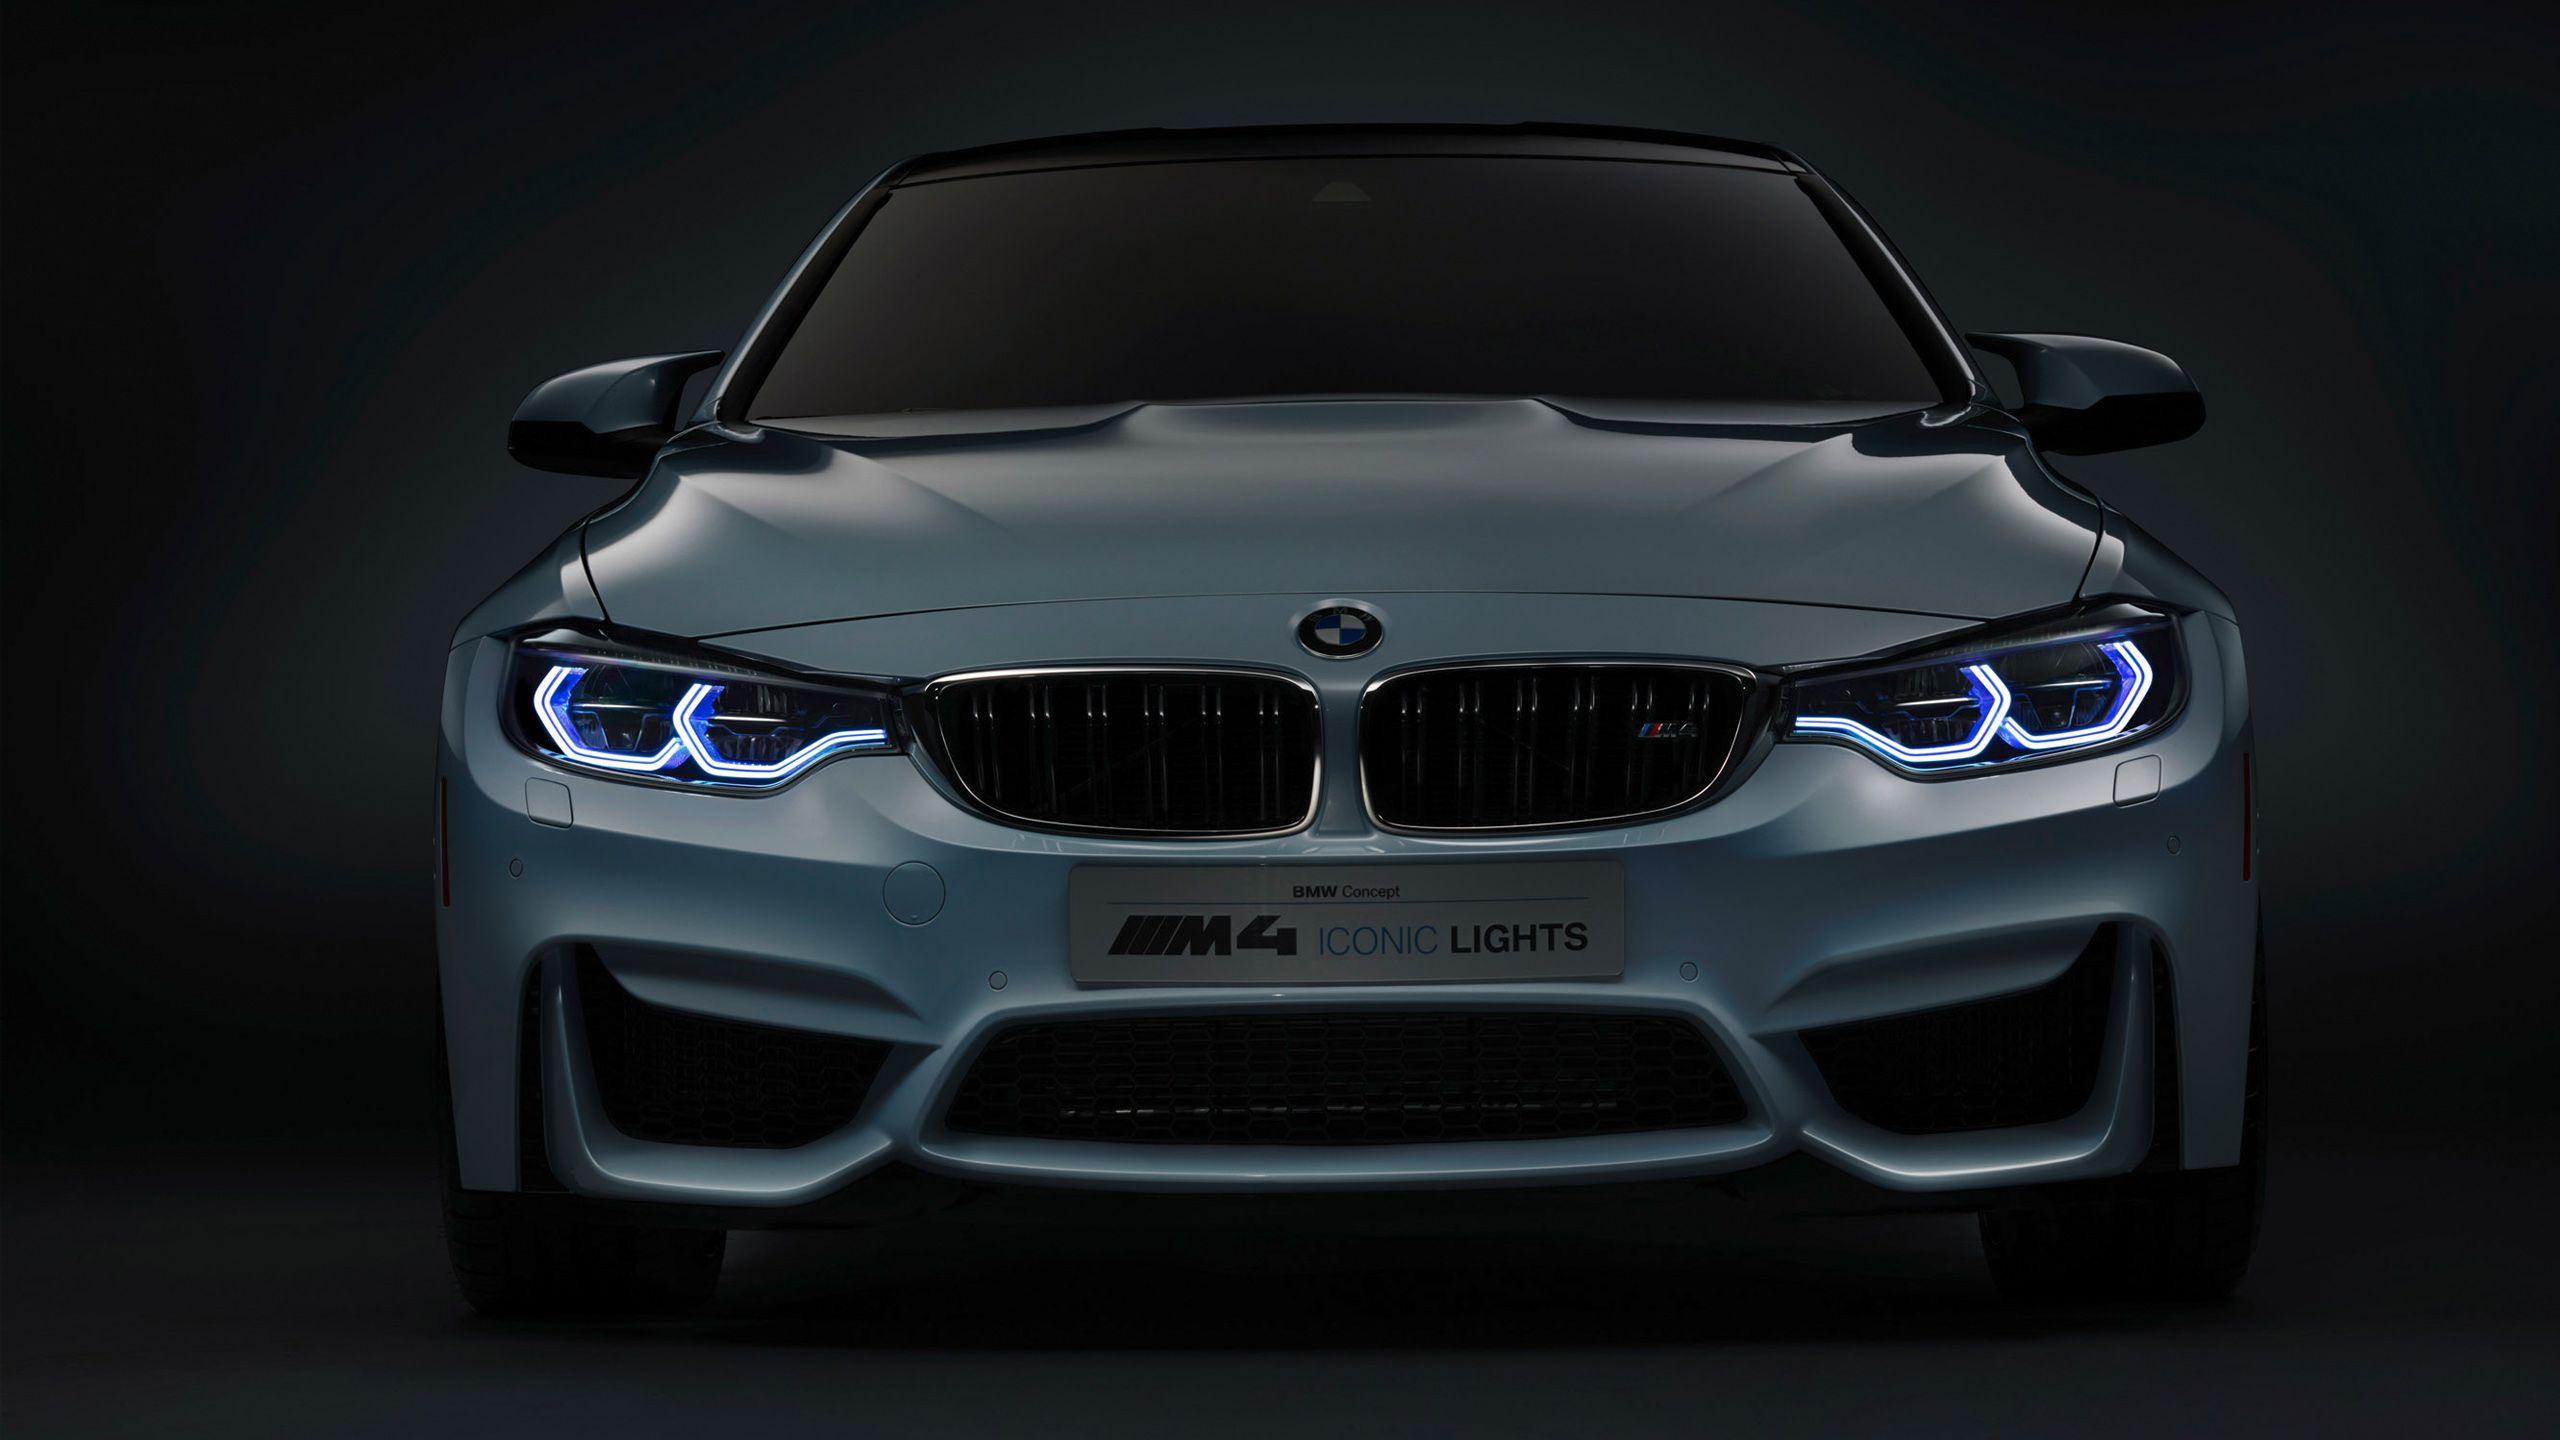 2560x1440 BMW M4 Concept Iconic Lights Hình nền.  Hình nền xe hơi HD.  TÔI